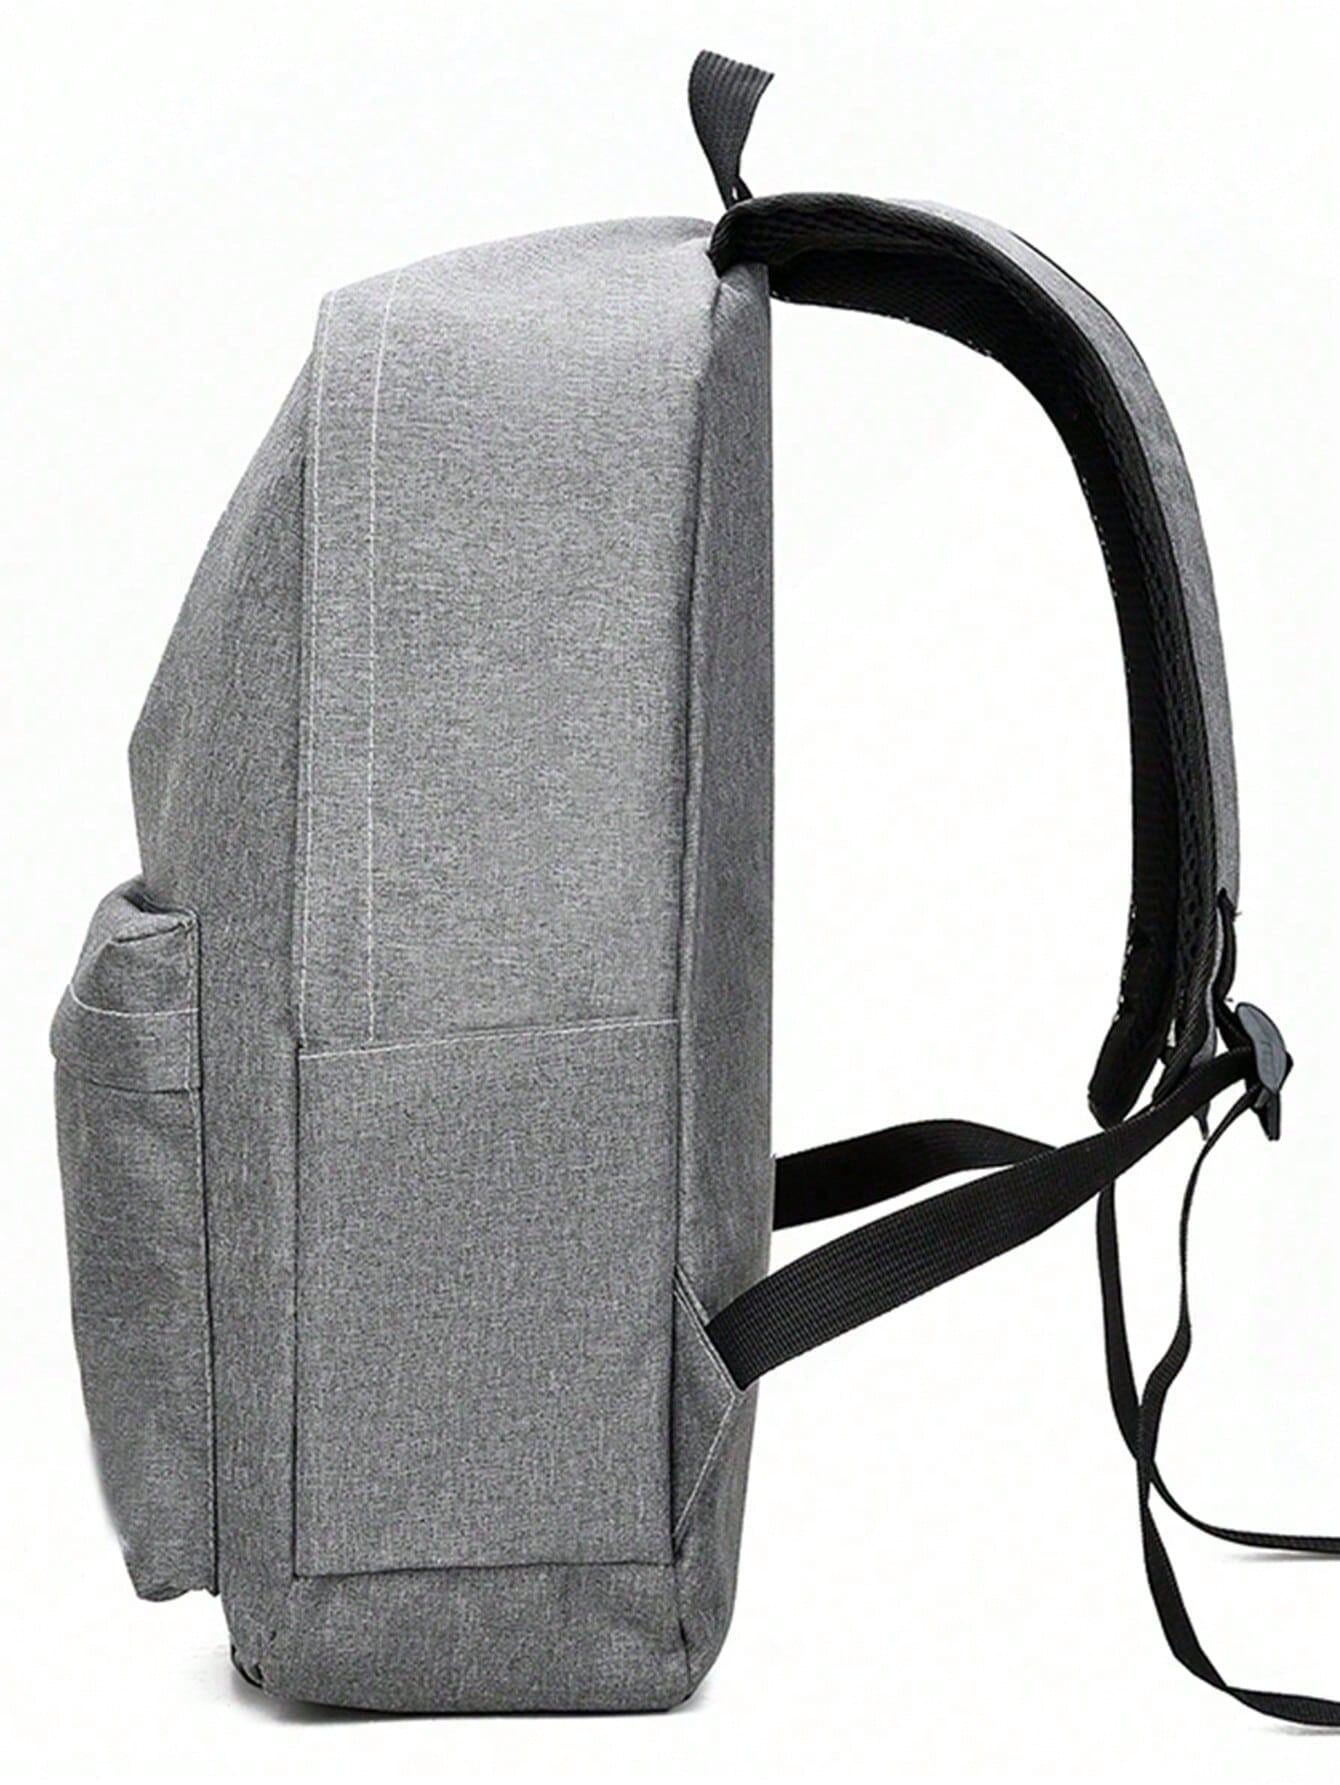 Рюкзак мужской рюкзак большой емкости рюкзак для школьников рюкзак нейлоновый рюкзак новый старший, серый рюкзак мужской нейлоновый камуфляжный многофункциональный